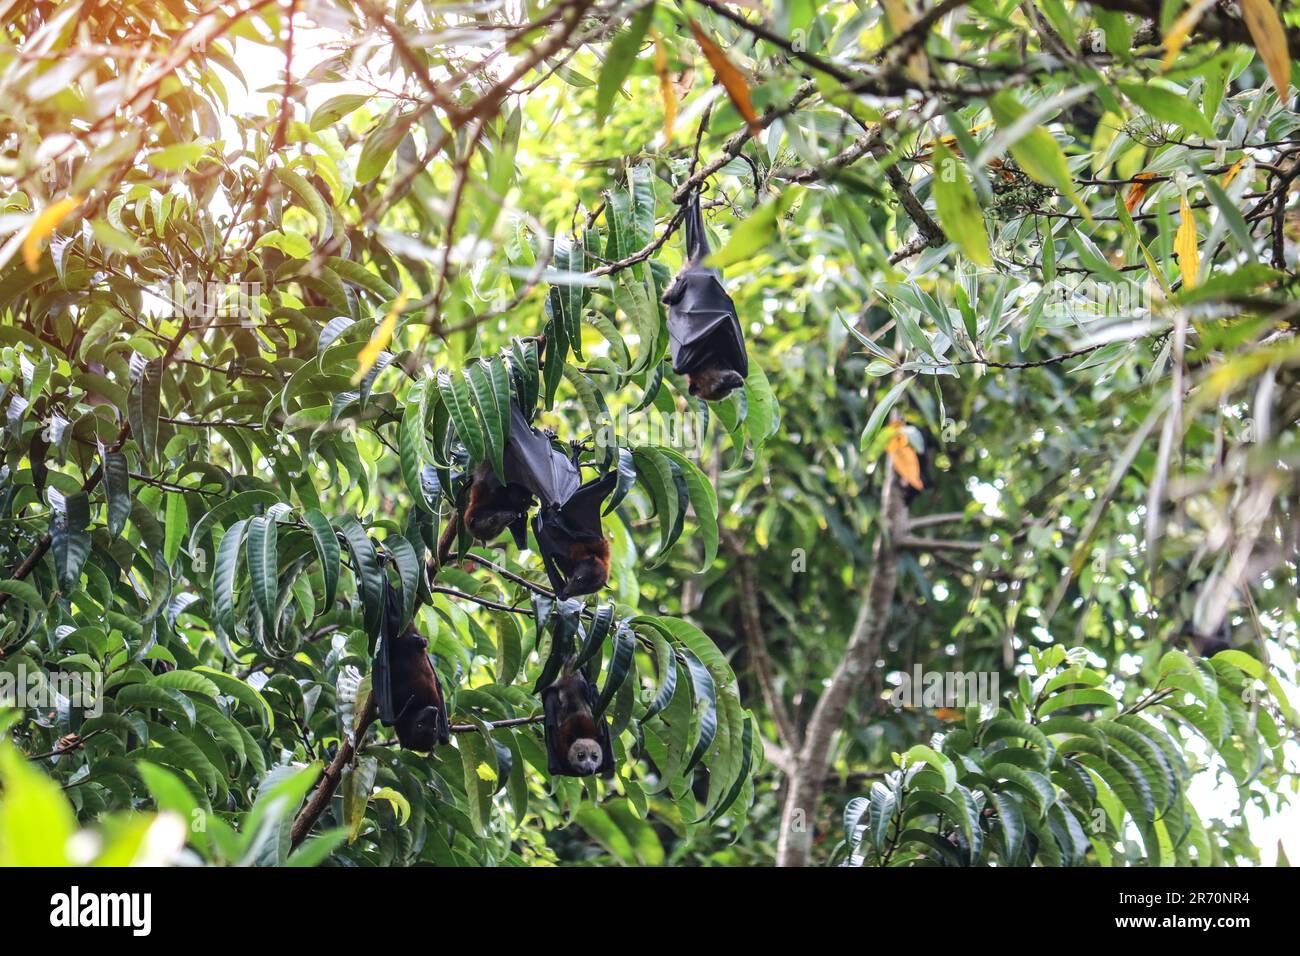 Pipistrelli di frutta appendono capovolti dai rami dell'albero, riposano prima di foraggio. Volpi volanti (Pteropus). Foto Stock